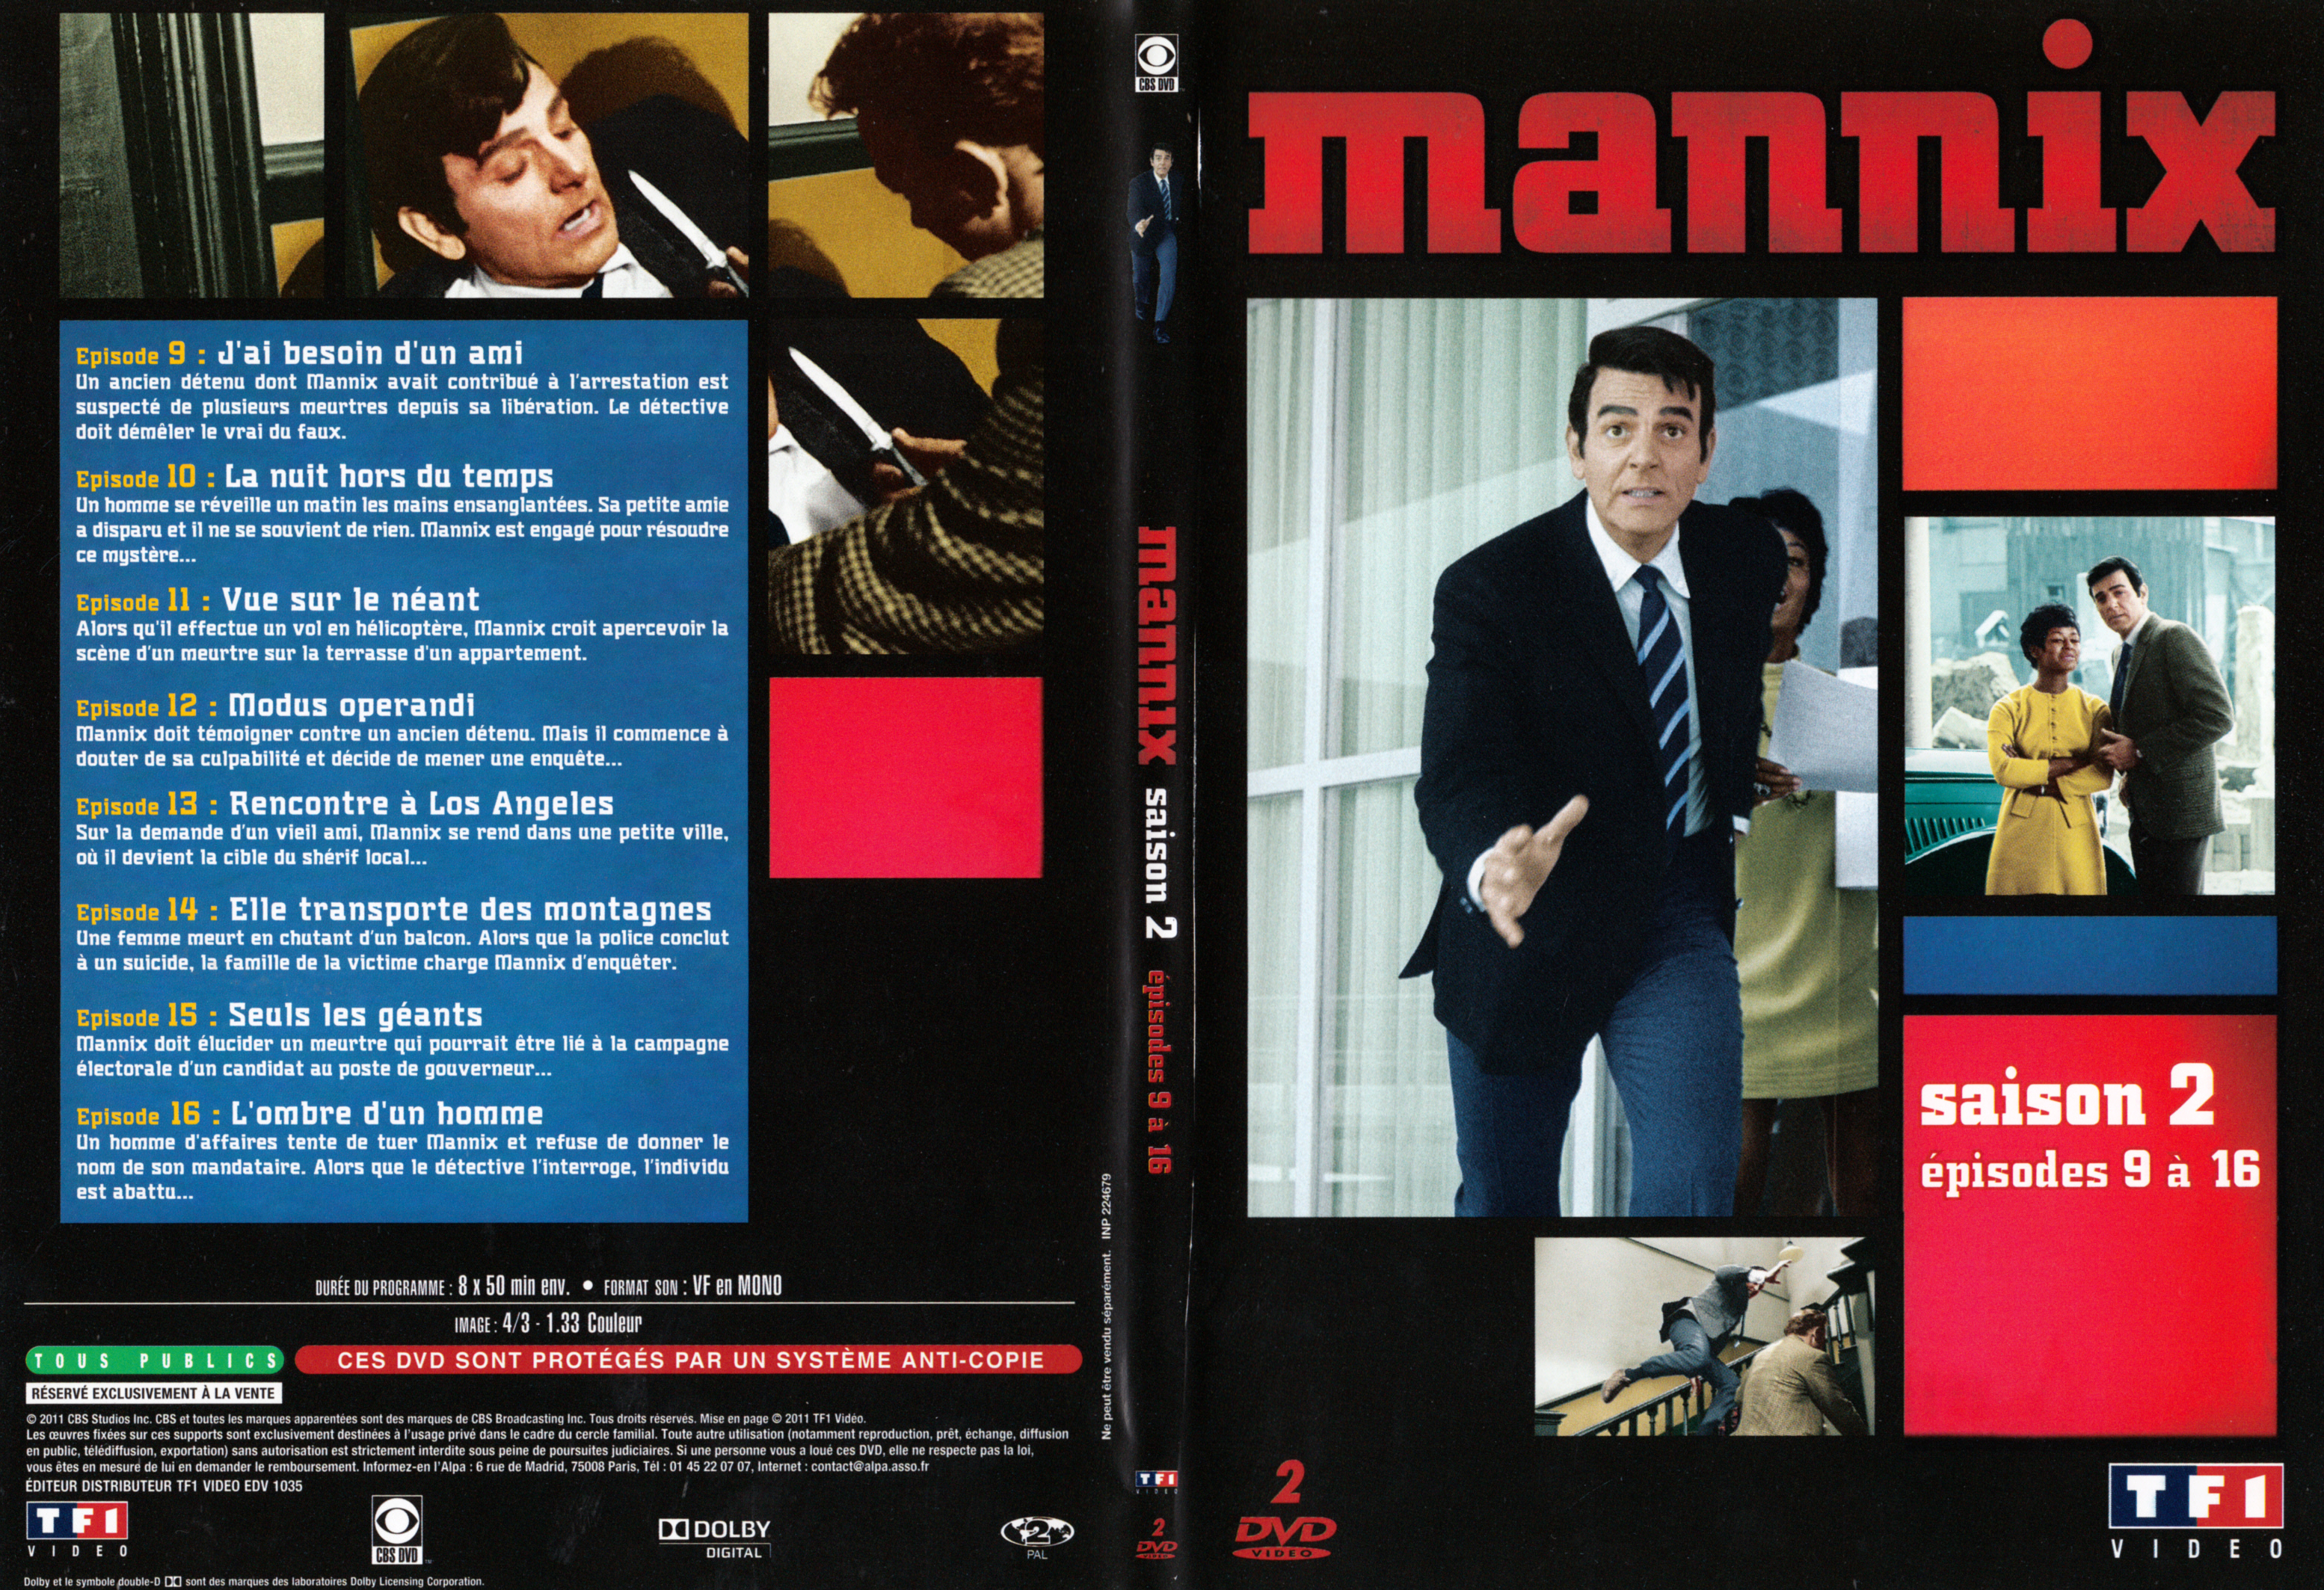 Jaquette DVD Mannix Saison 2 Ep 9-16